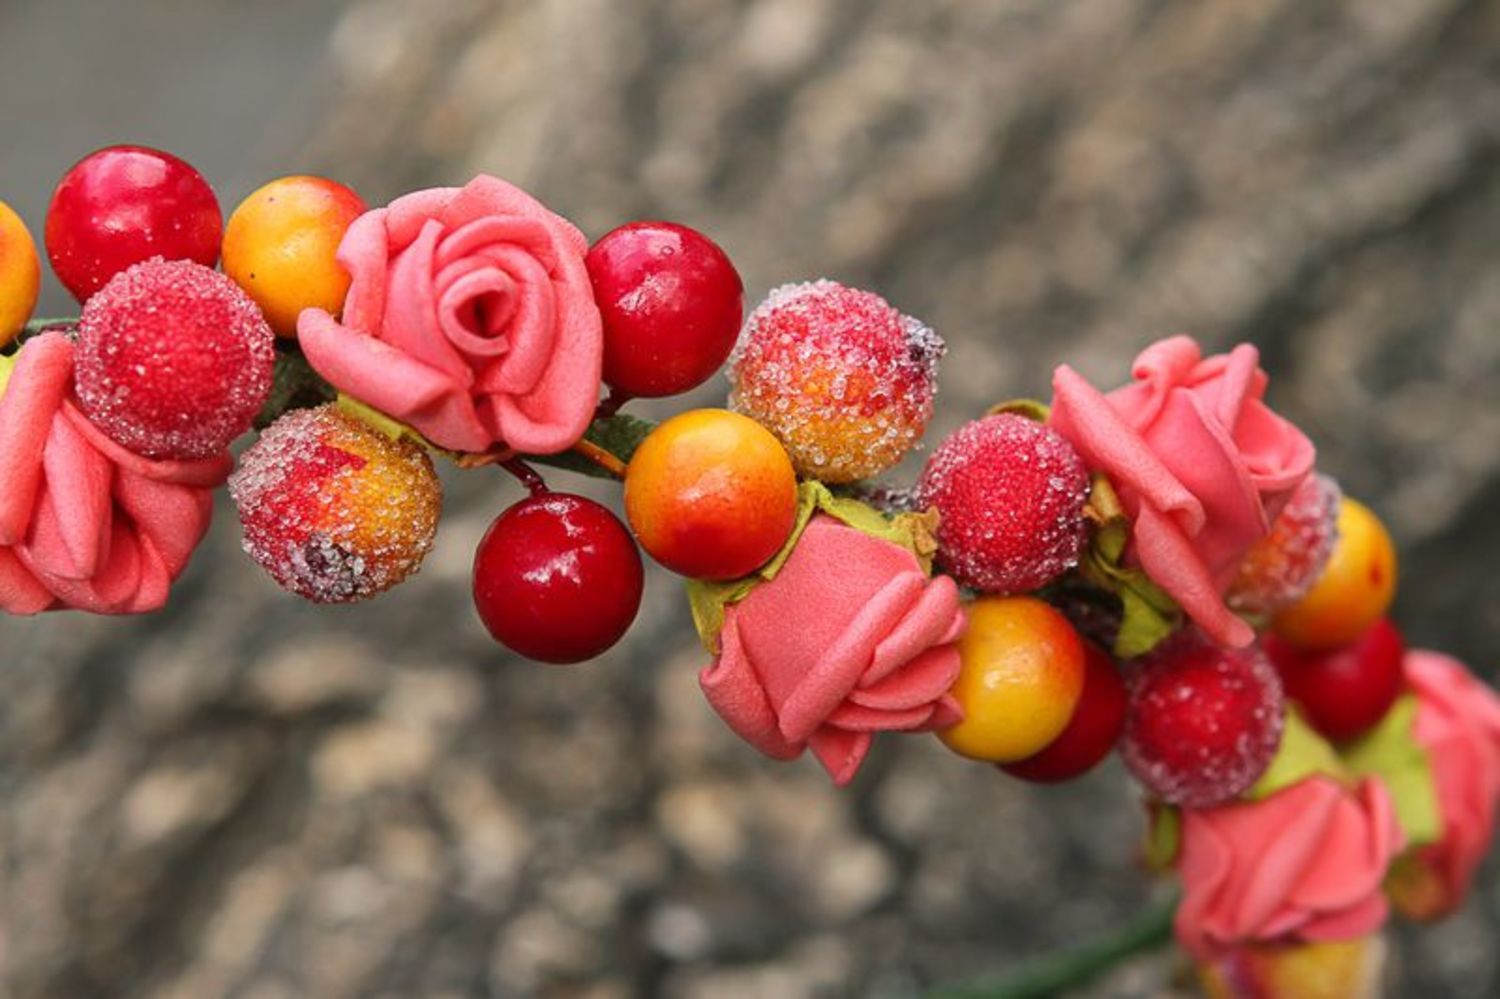 Обруч, венок с искусственными цветами и ягодами  фото 1